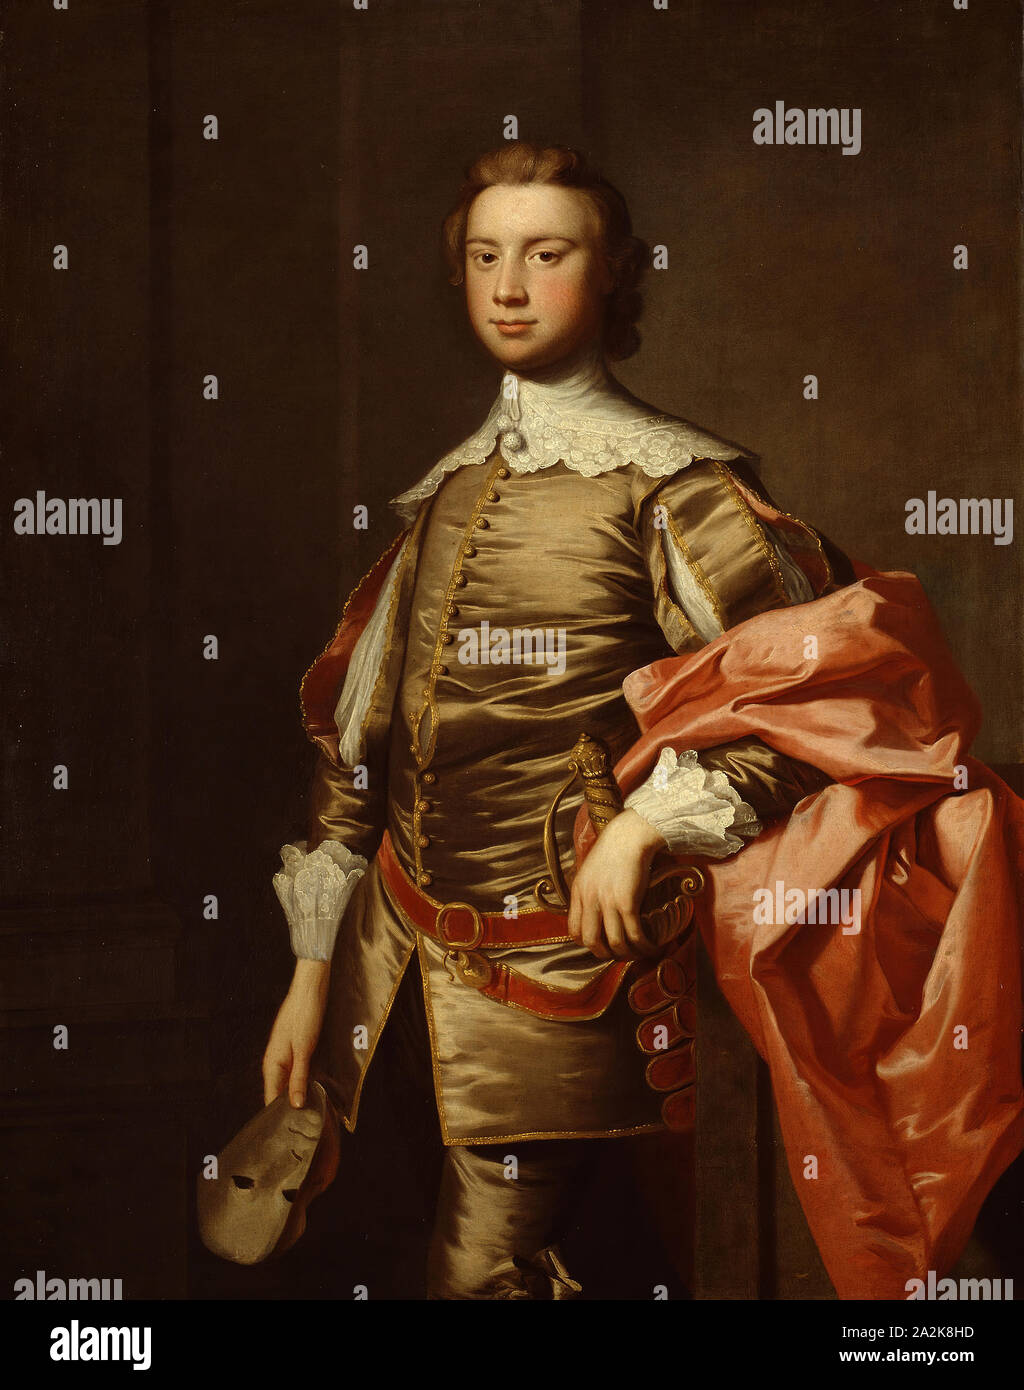 John Van der parete, c. 1745, Thomas Hudson, britannico, 1701-1779, Inghilterra, olio su tela, 127,3 × 101,9 cm (50 1/8 × 40 1/8 in Foto Stock